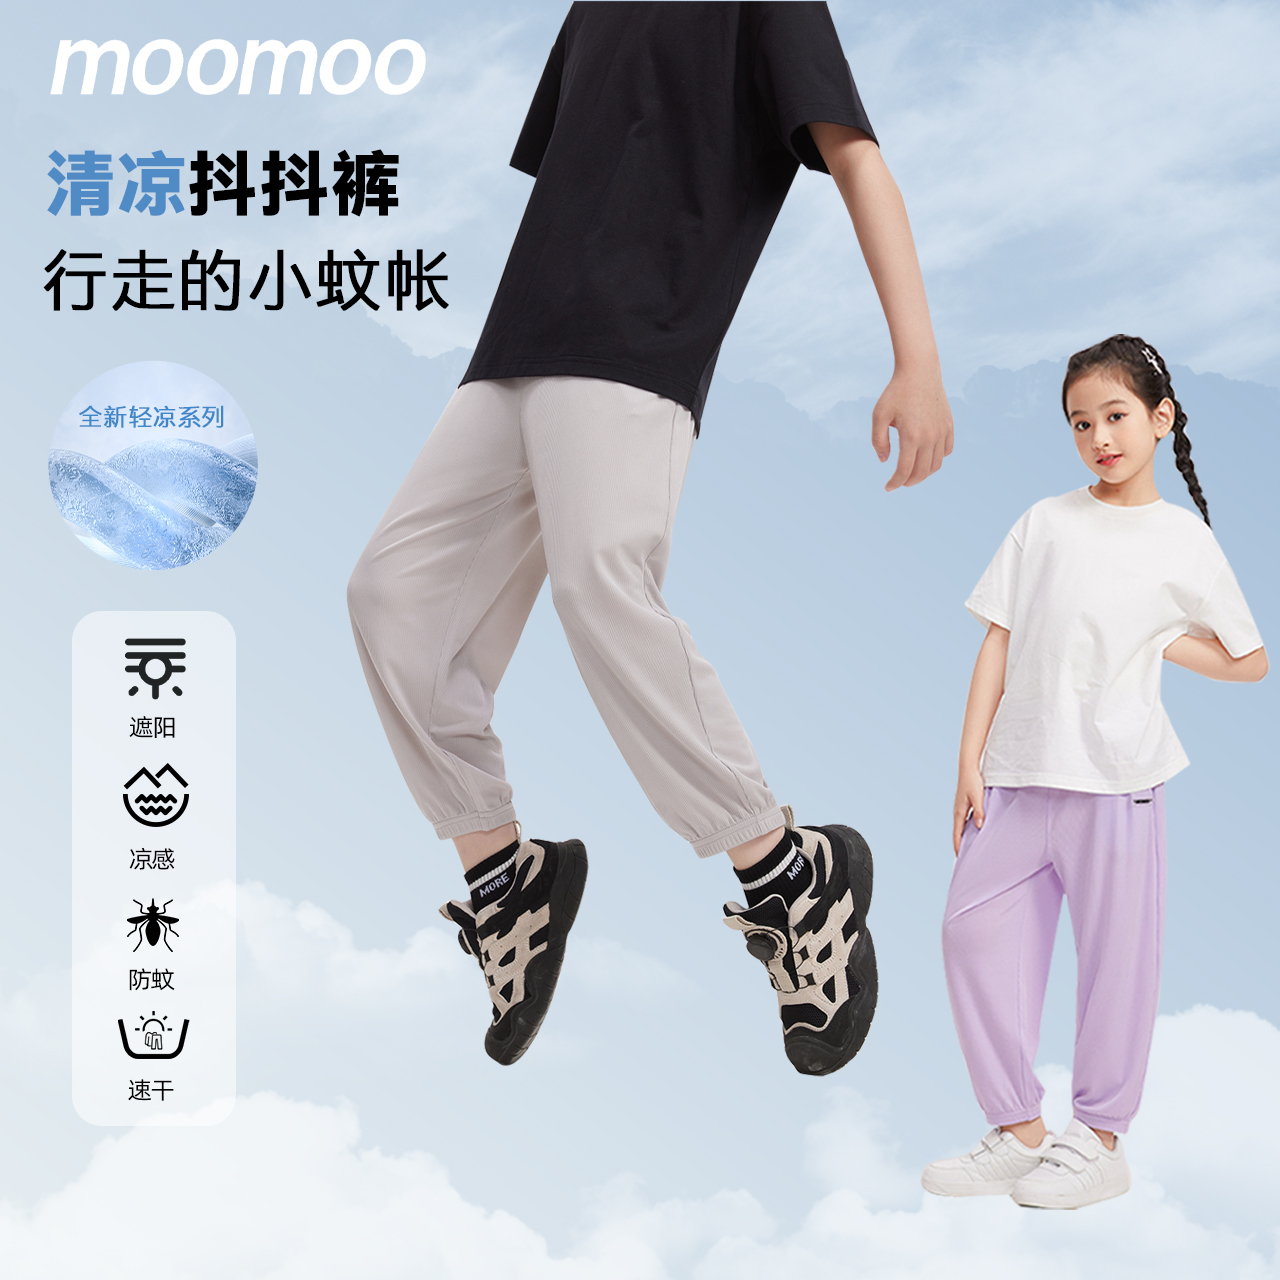 【冰感抖抖裤】moomoo童装夏季薄款儿童男童休闲裤女童空调裤